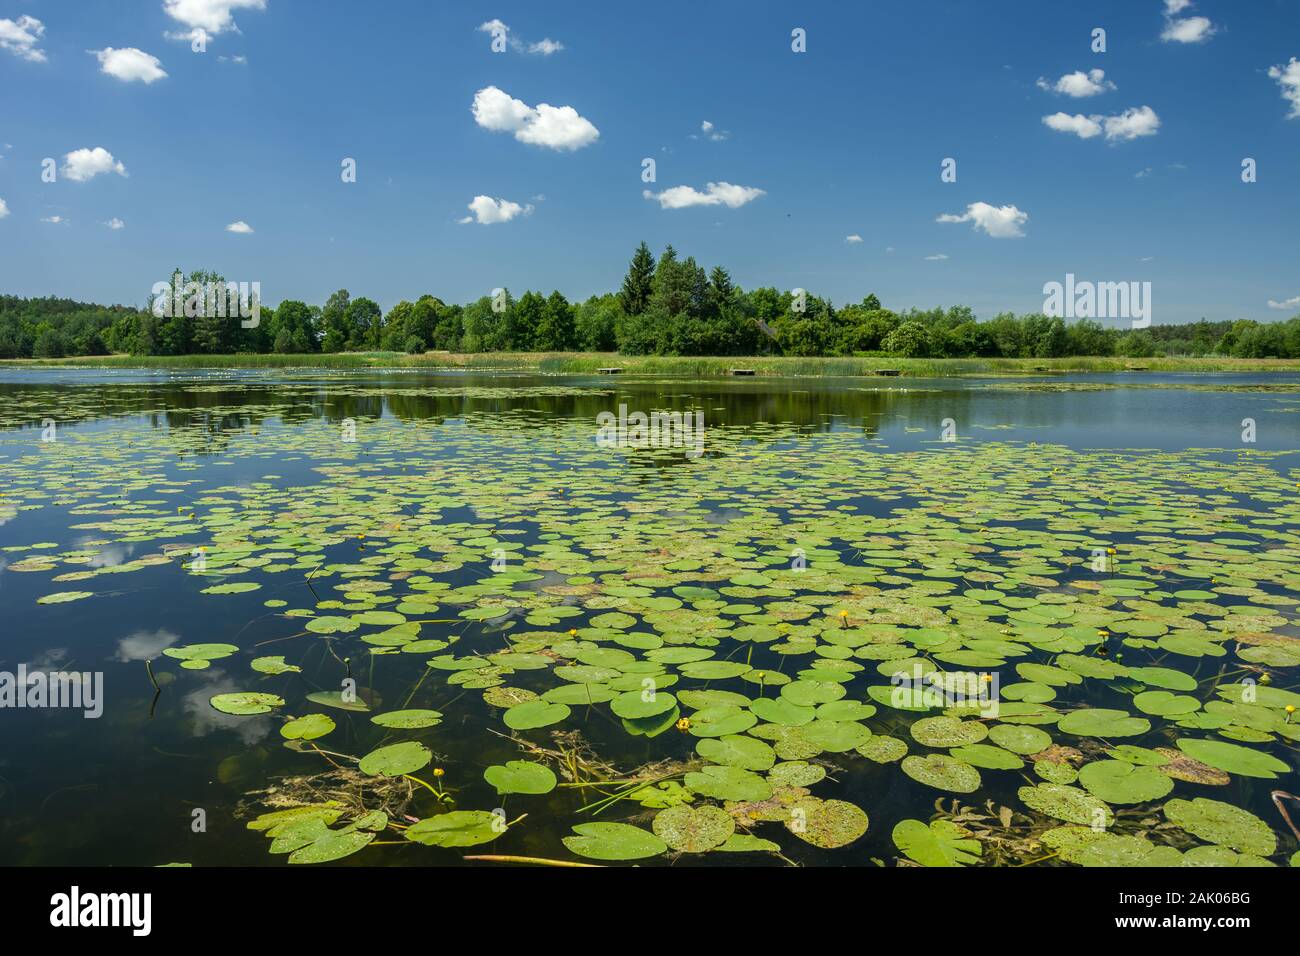 Les feuilles de lotus flottant sur la surface du lac, les arbres sur la rive et le ciel. Dubienka, Pologne Banque D'Images